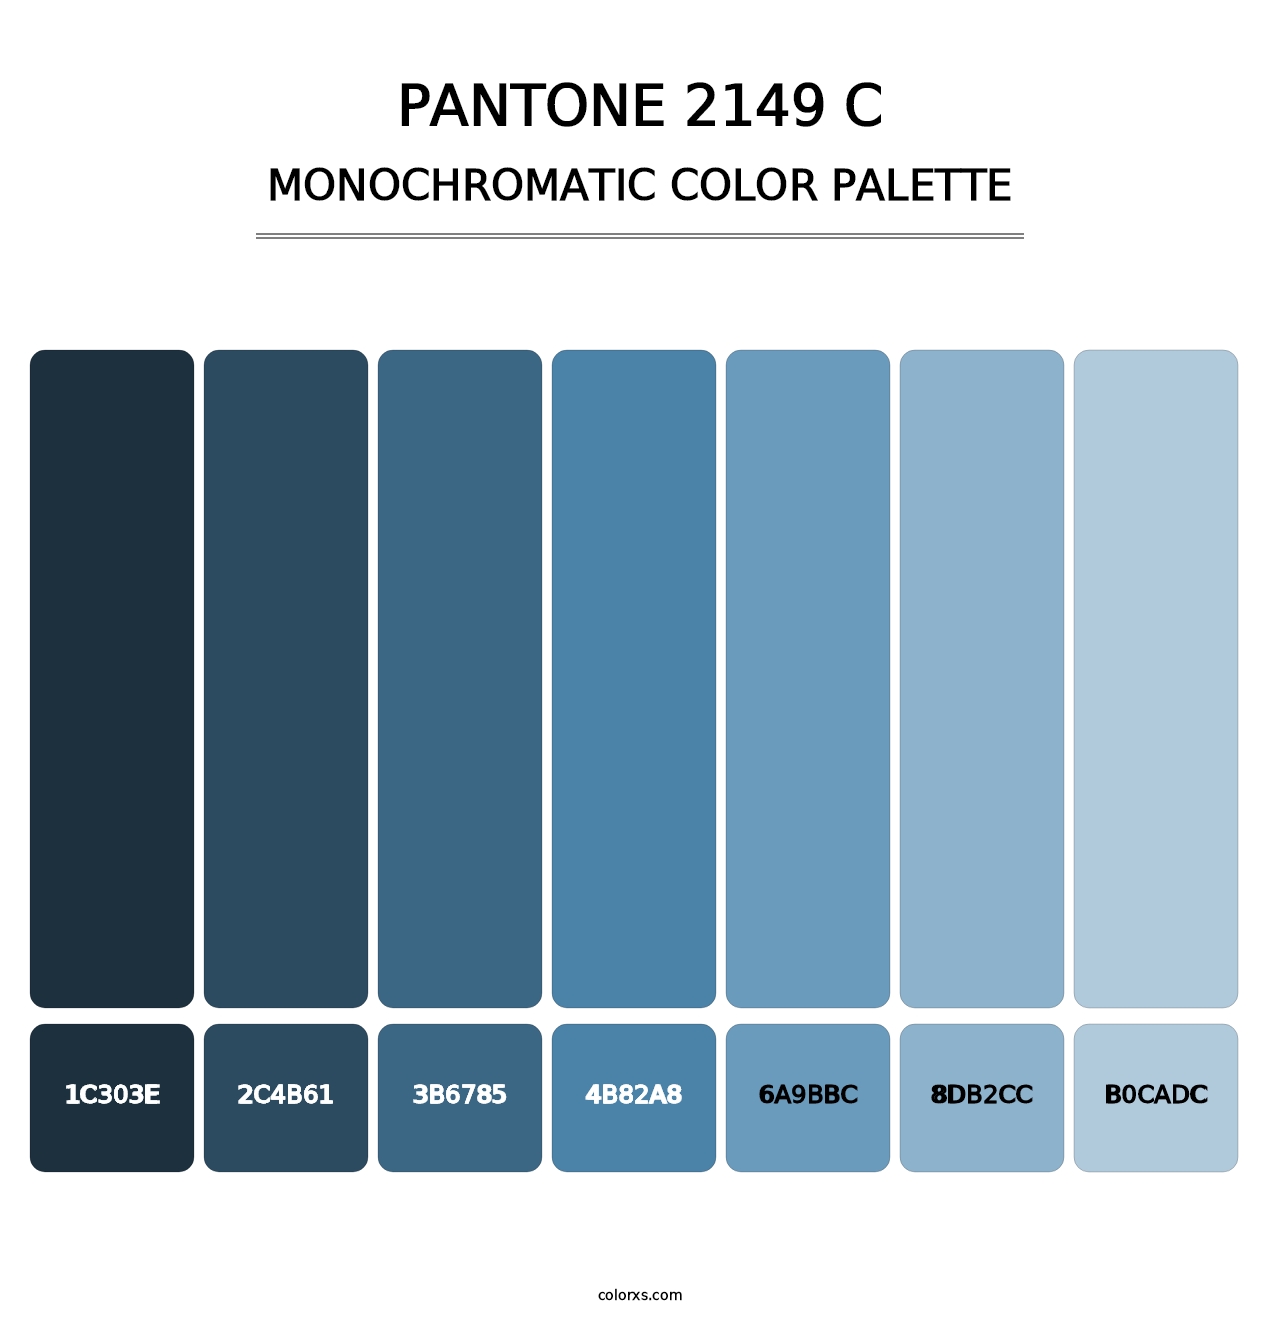 PANTONE 2149 C - Monochromatic Color Palette